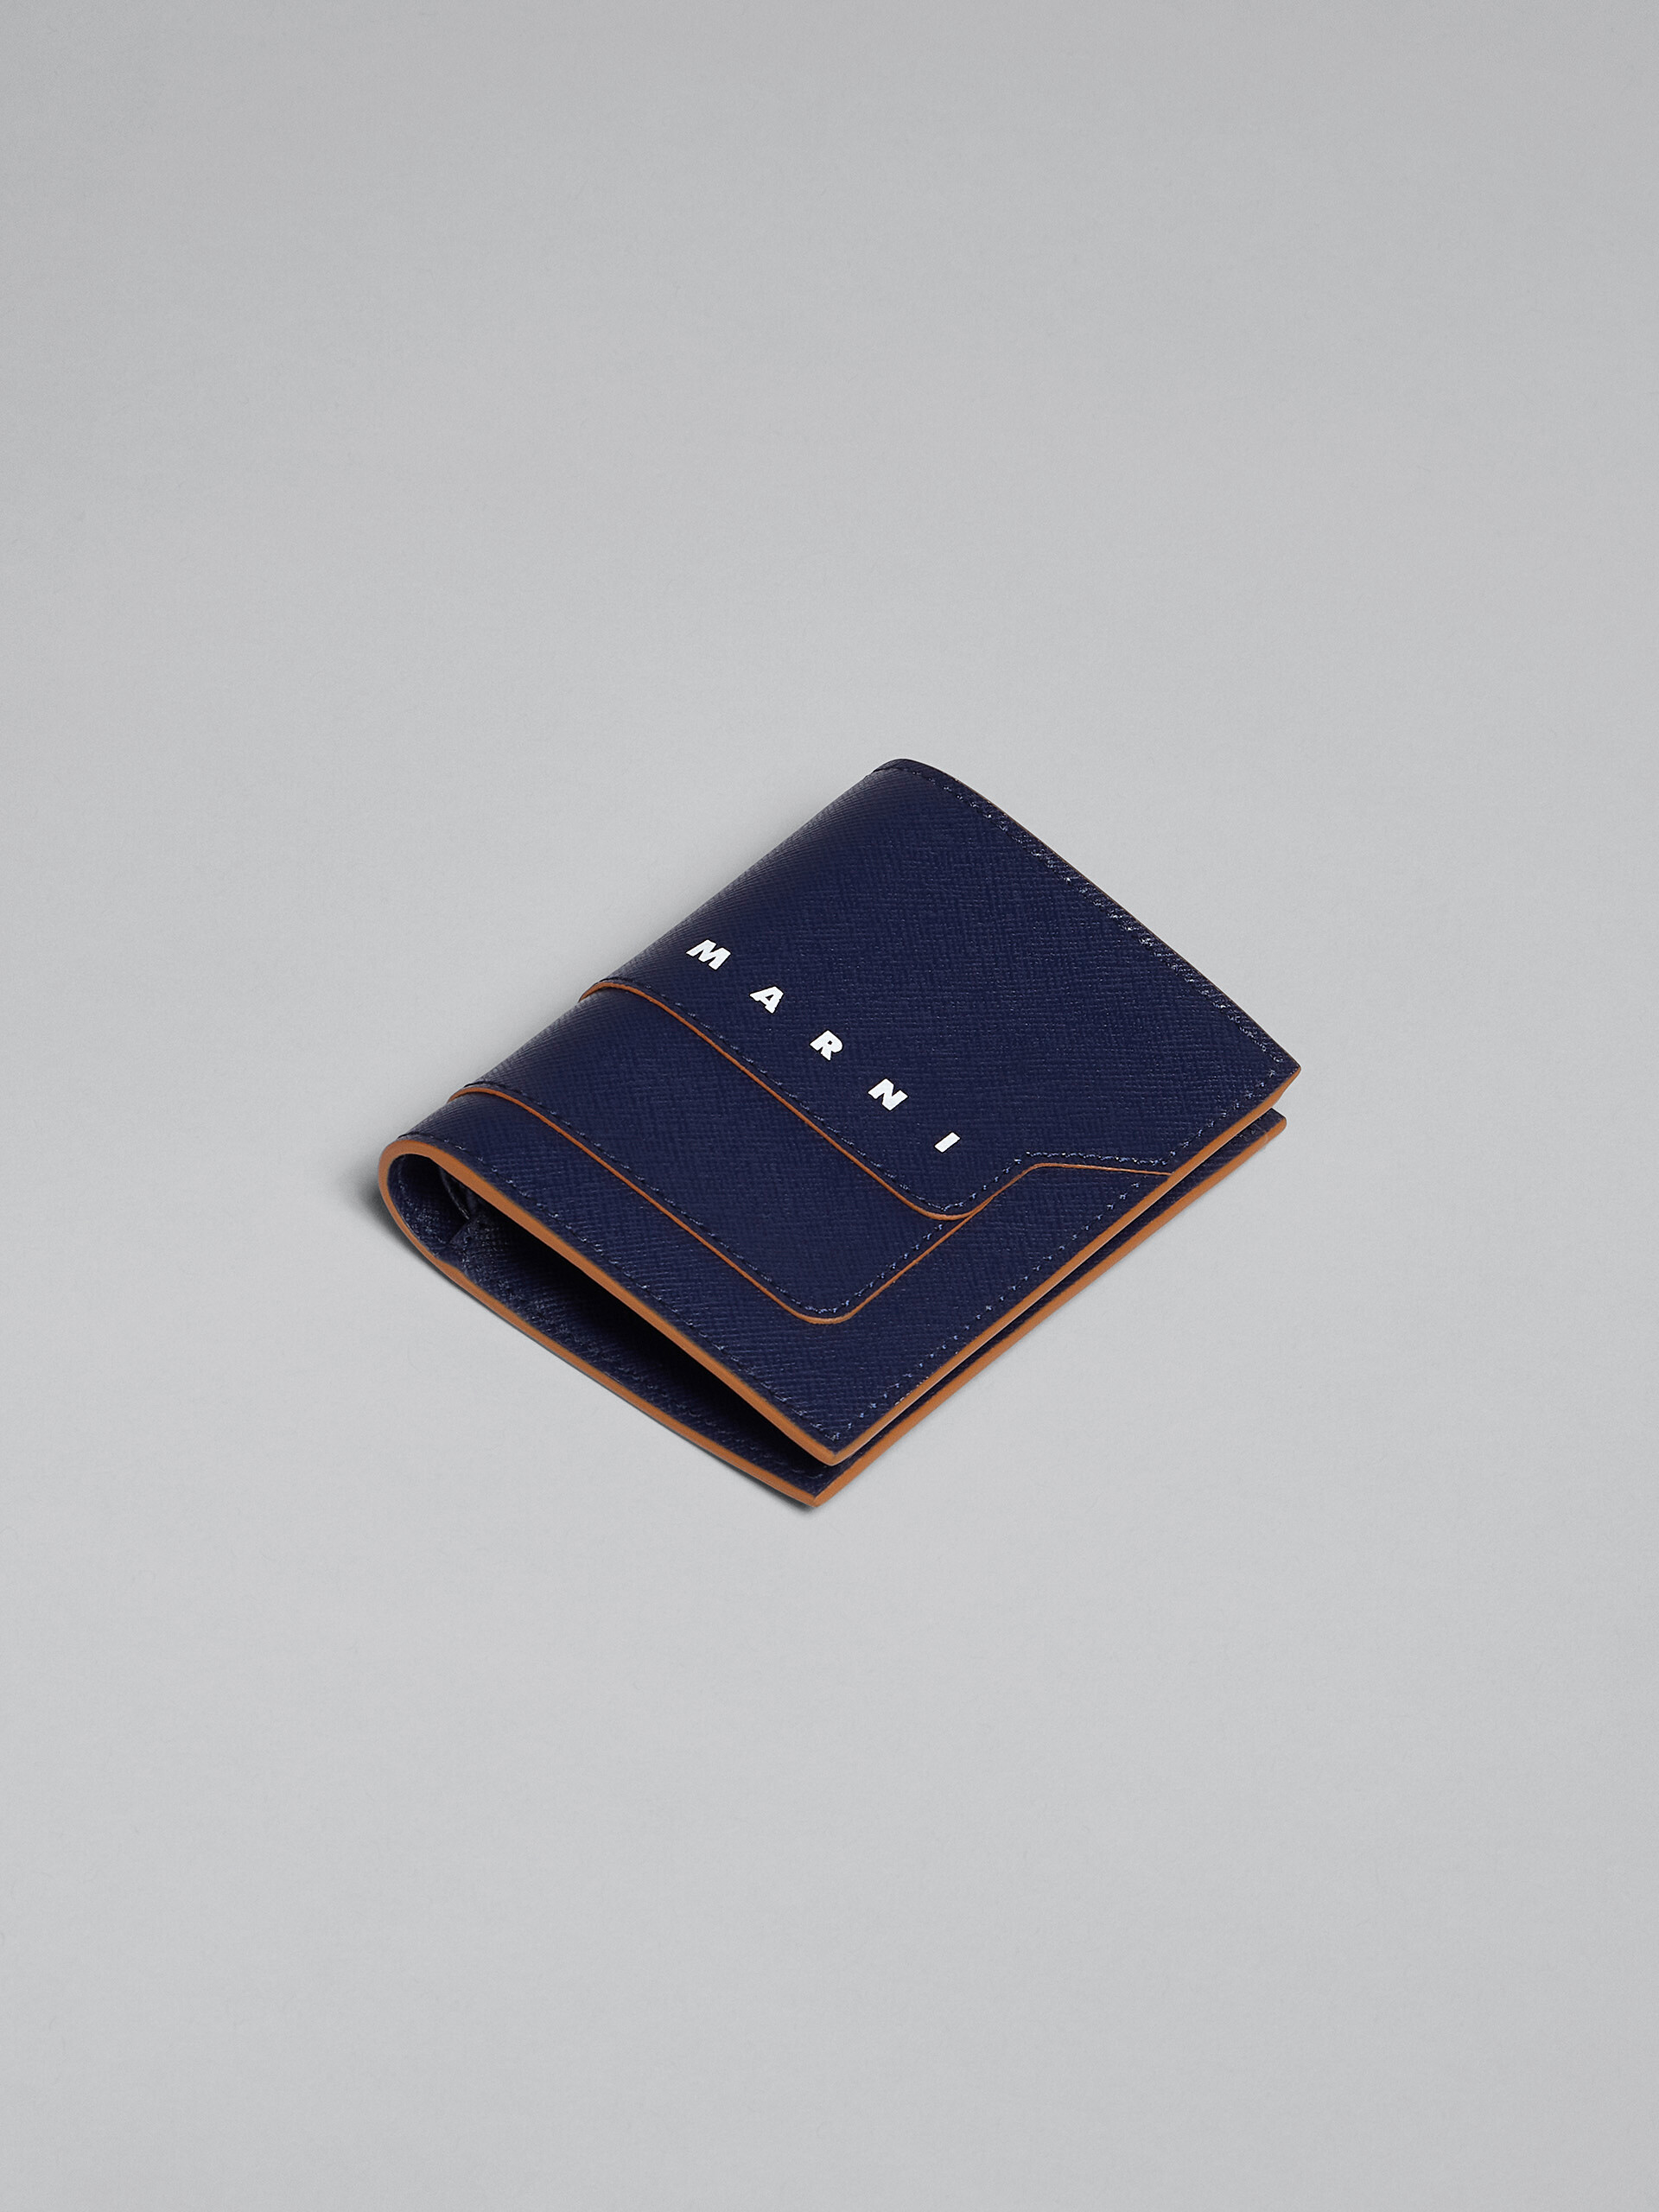 ブルー サフィアーノレザー二つ折りウォレット - 財布 - Image 4